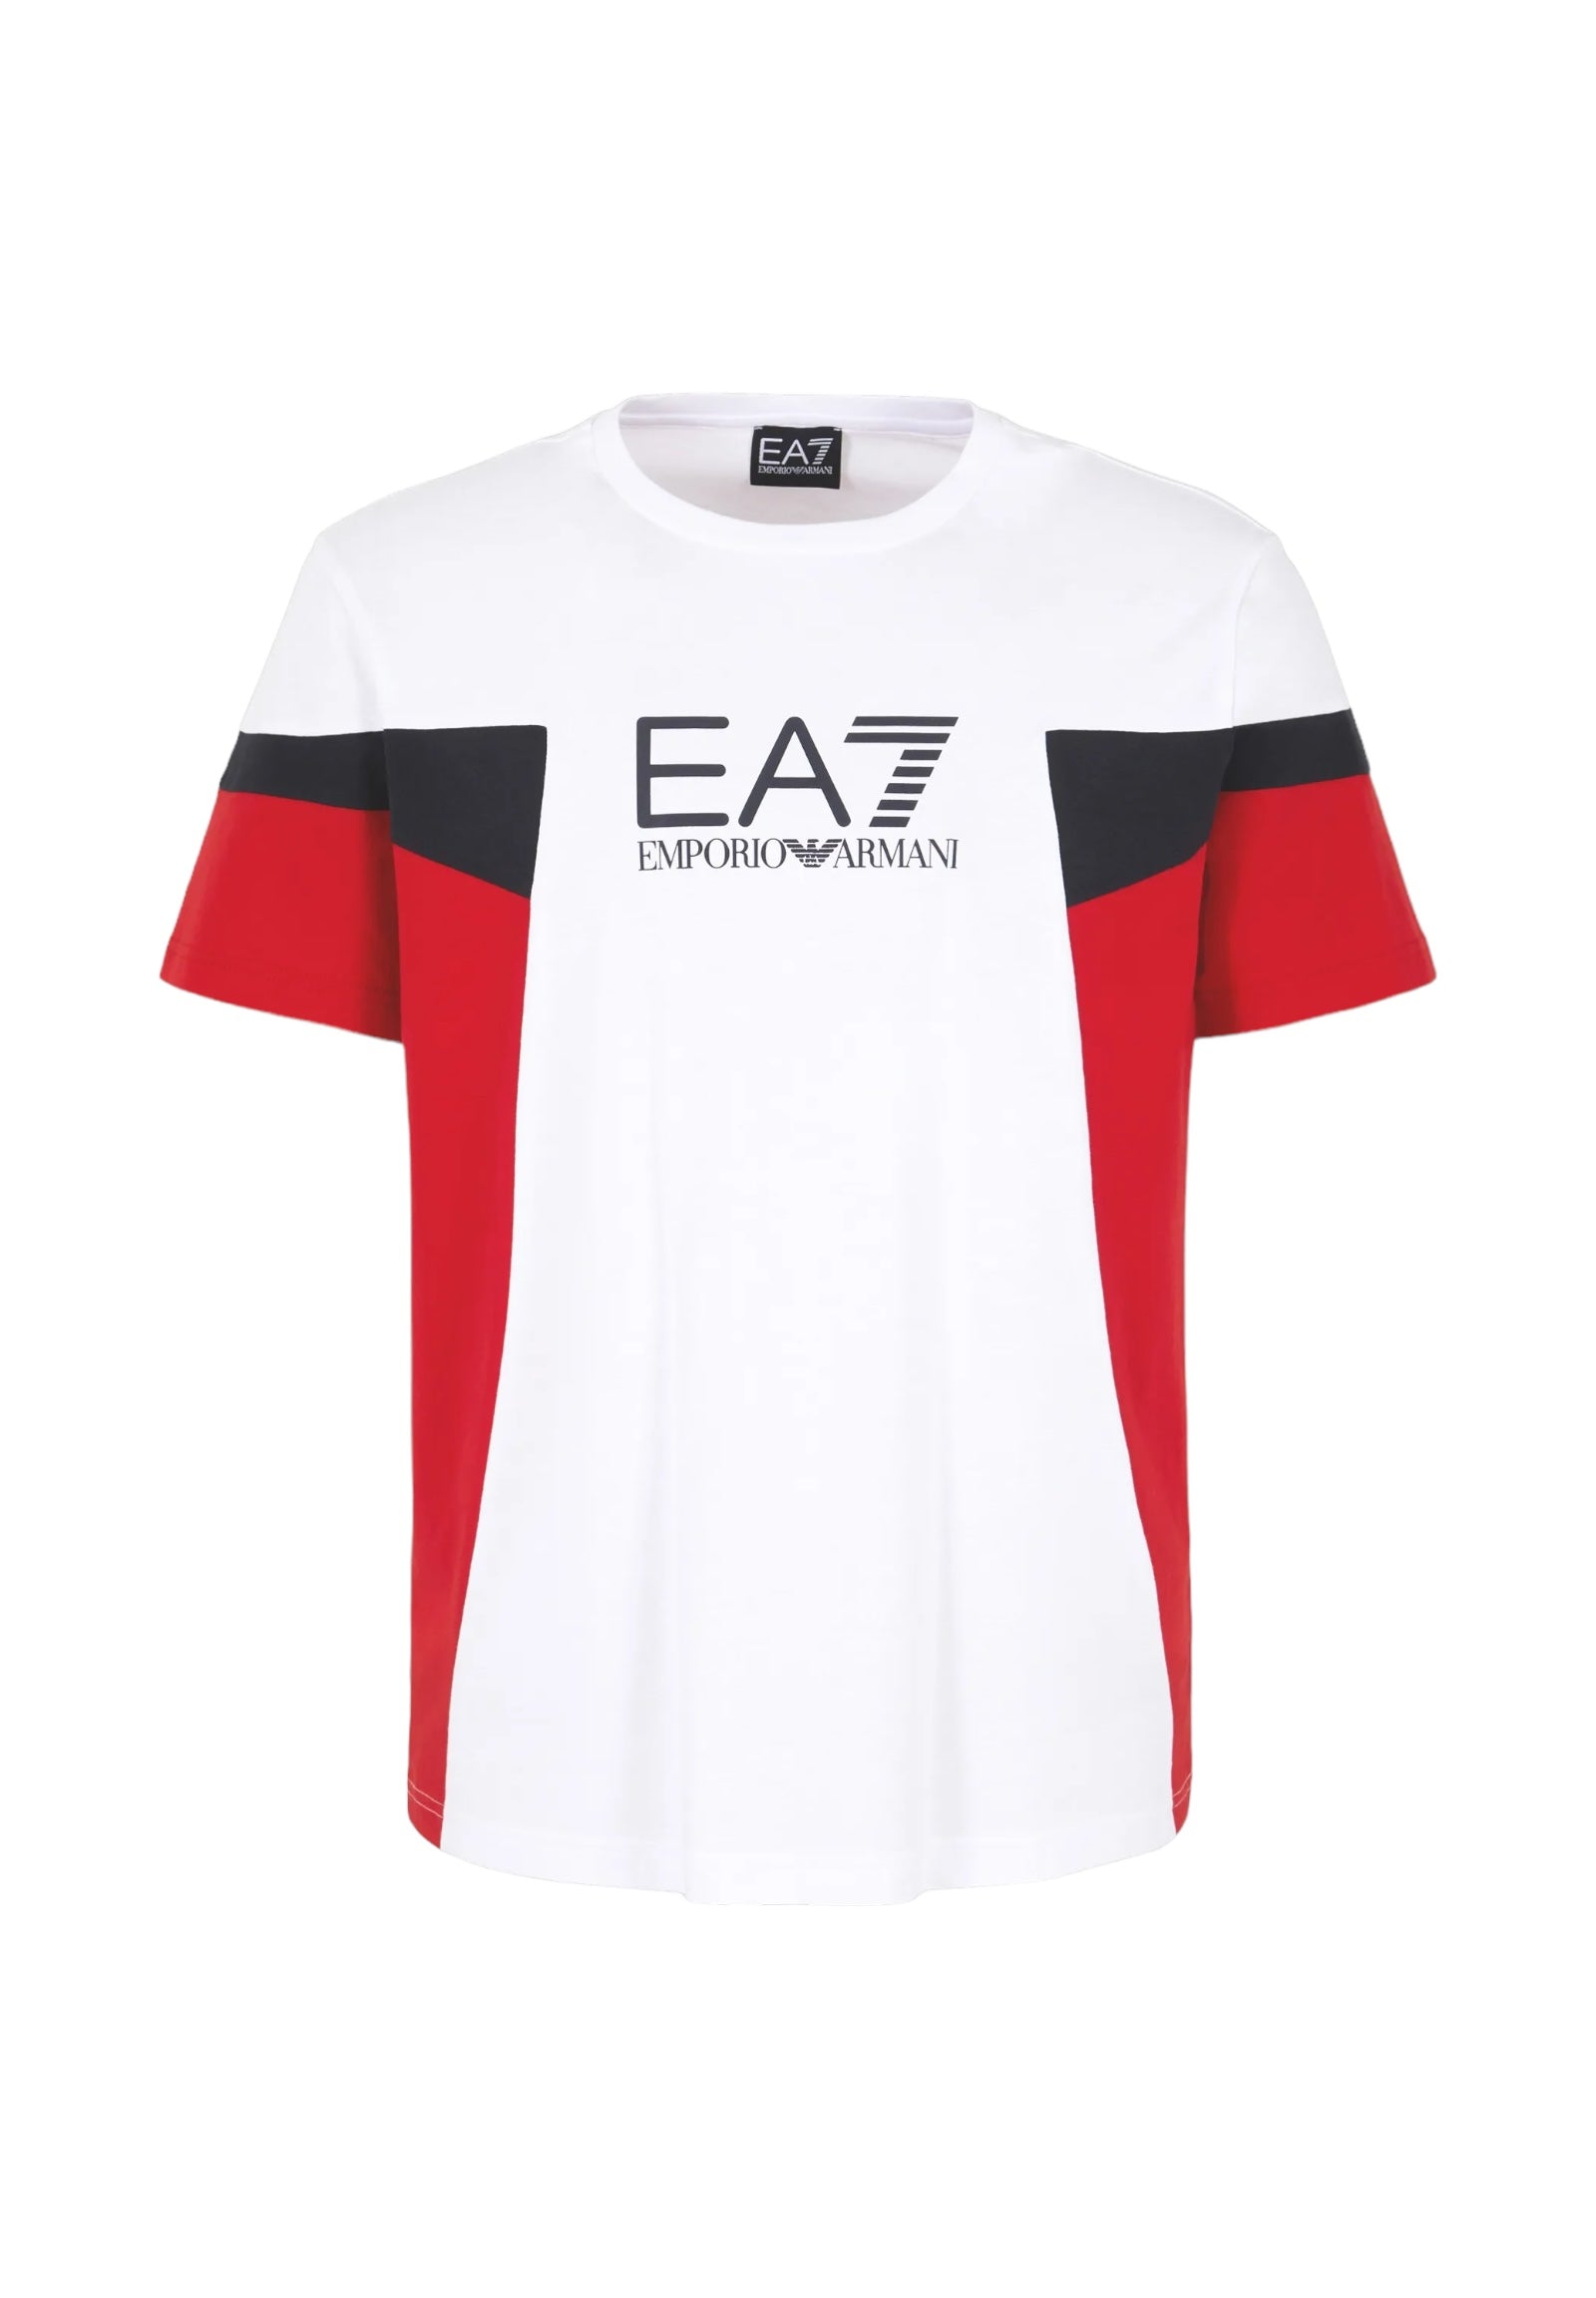 Ea7 Emporio Armani T-Shirt* 3dpt10 White